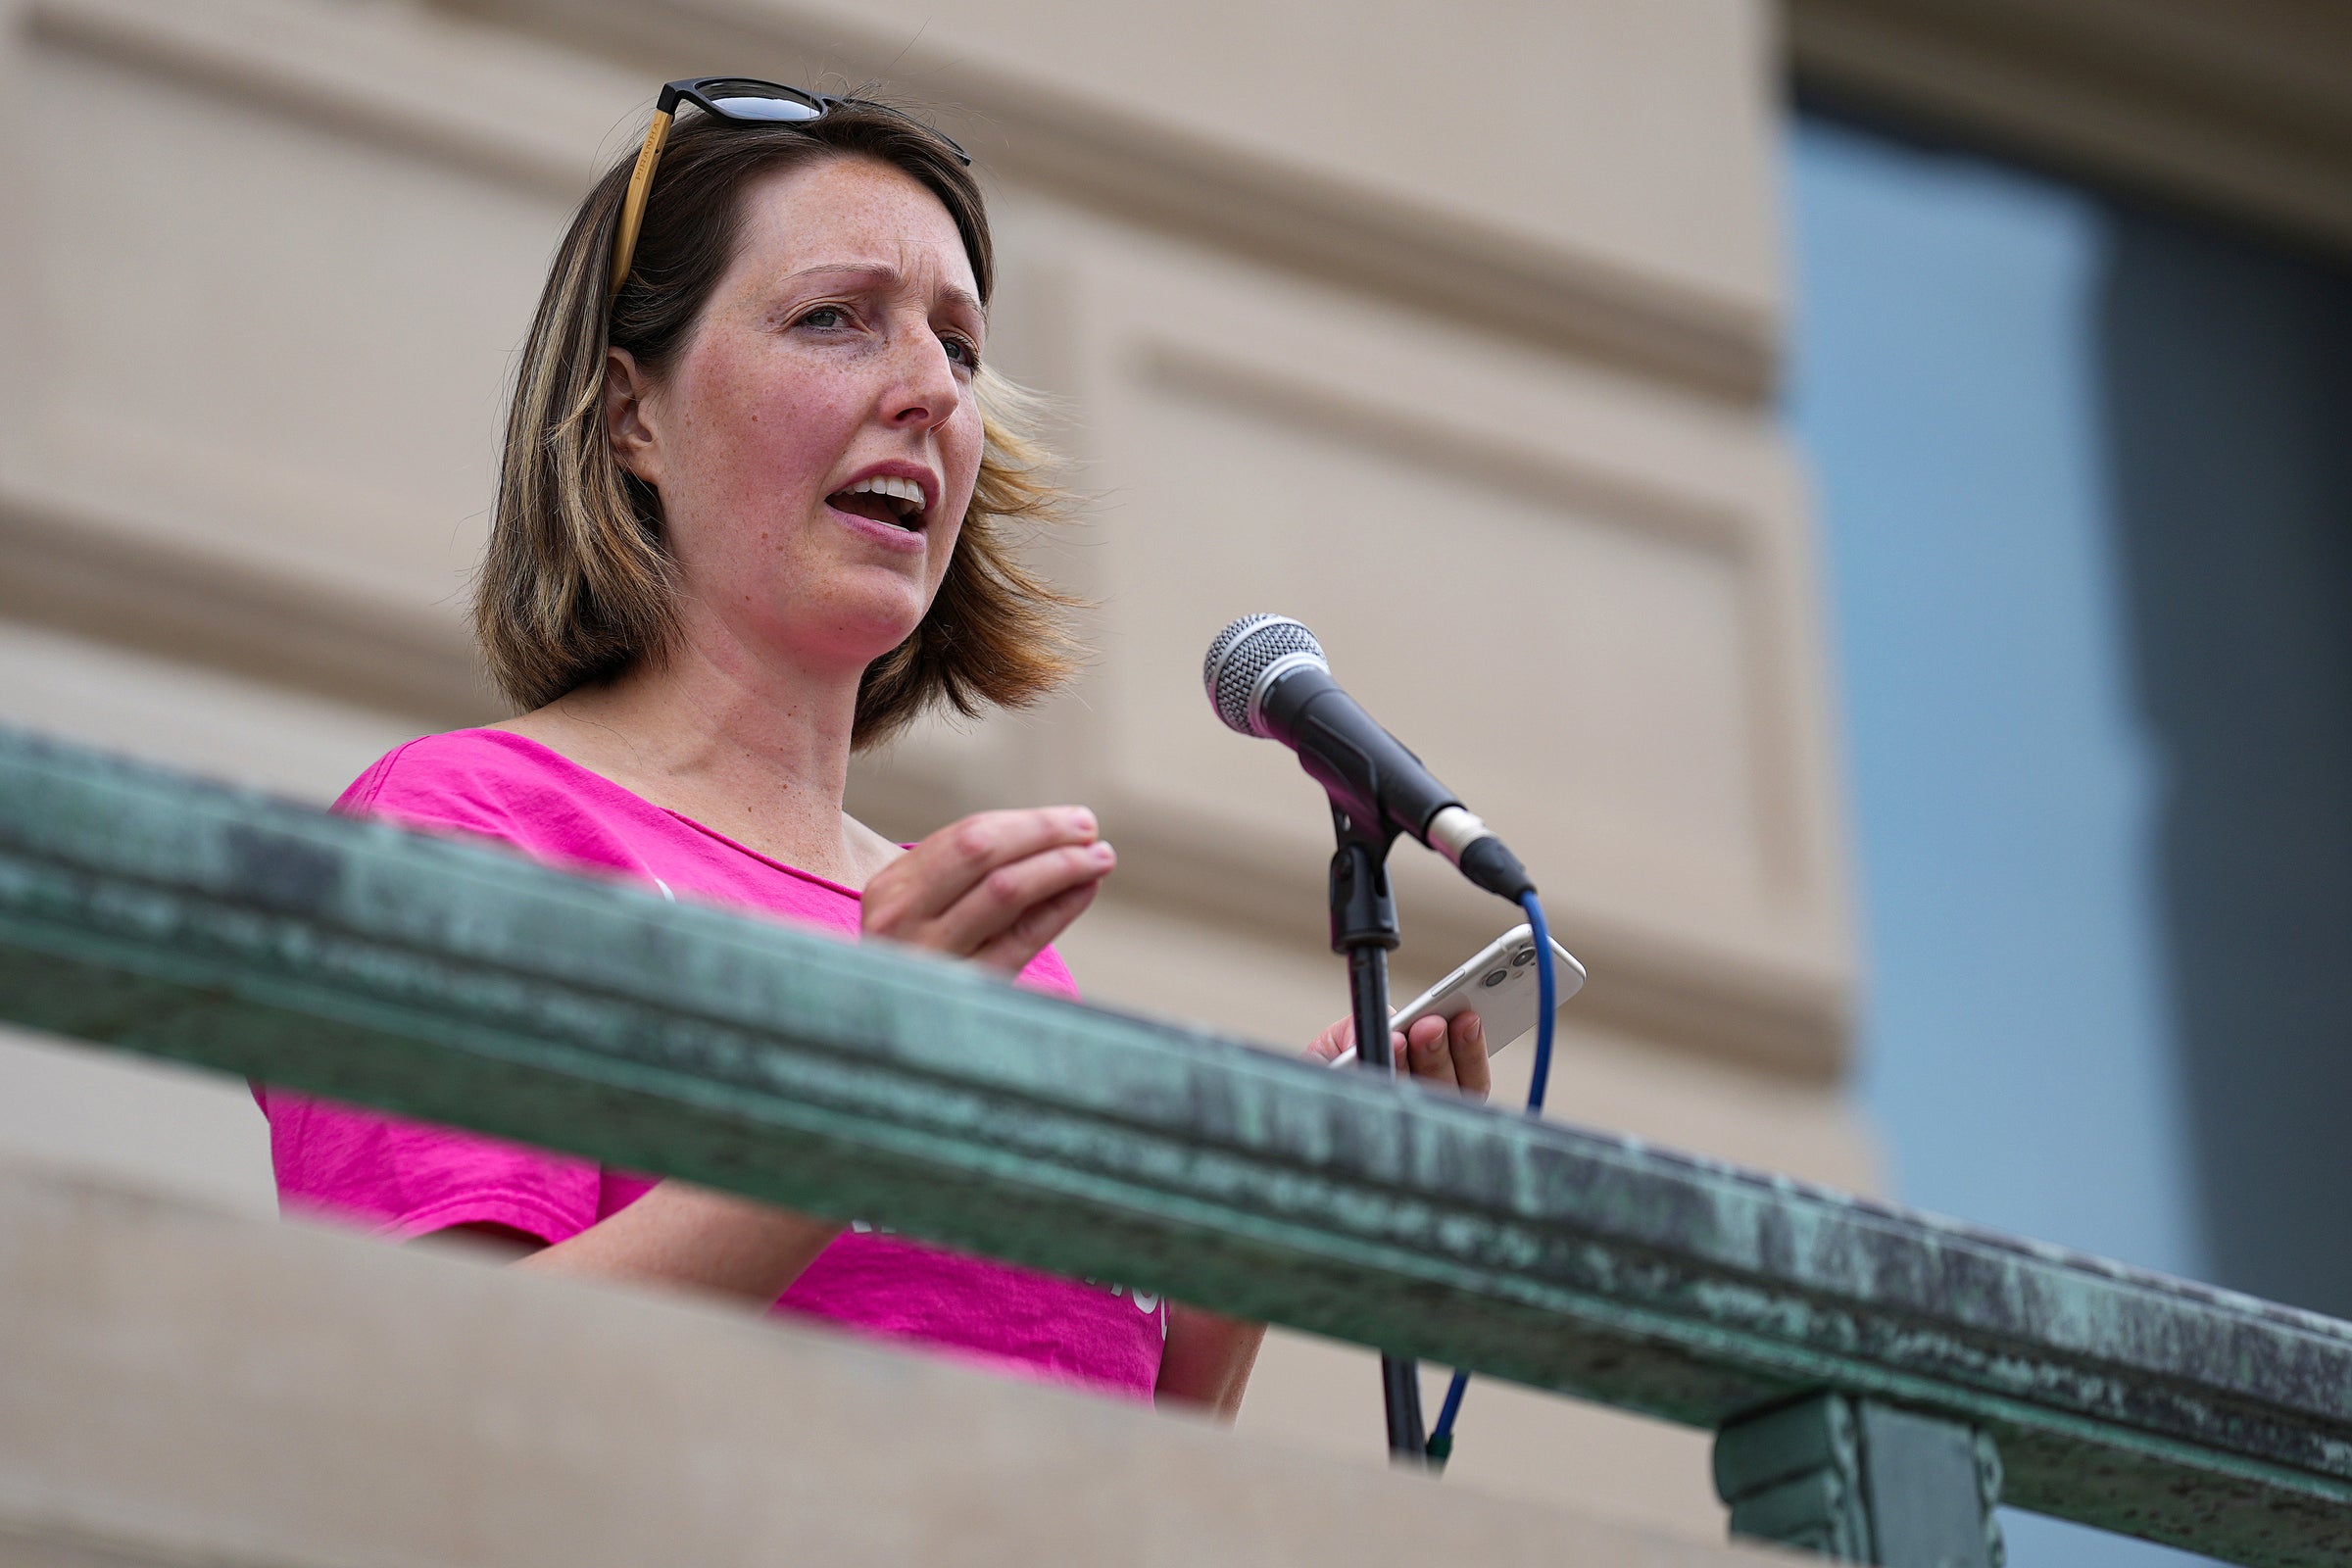 La Dra. Caitlin Bernard, proveedora de servicios de salud reproductiva, habla durante una manifestación por el derecho al aborto el 25 de junio de 2022, en el parlamento de Indiana en Indianápolis